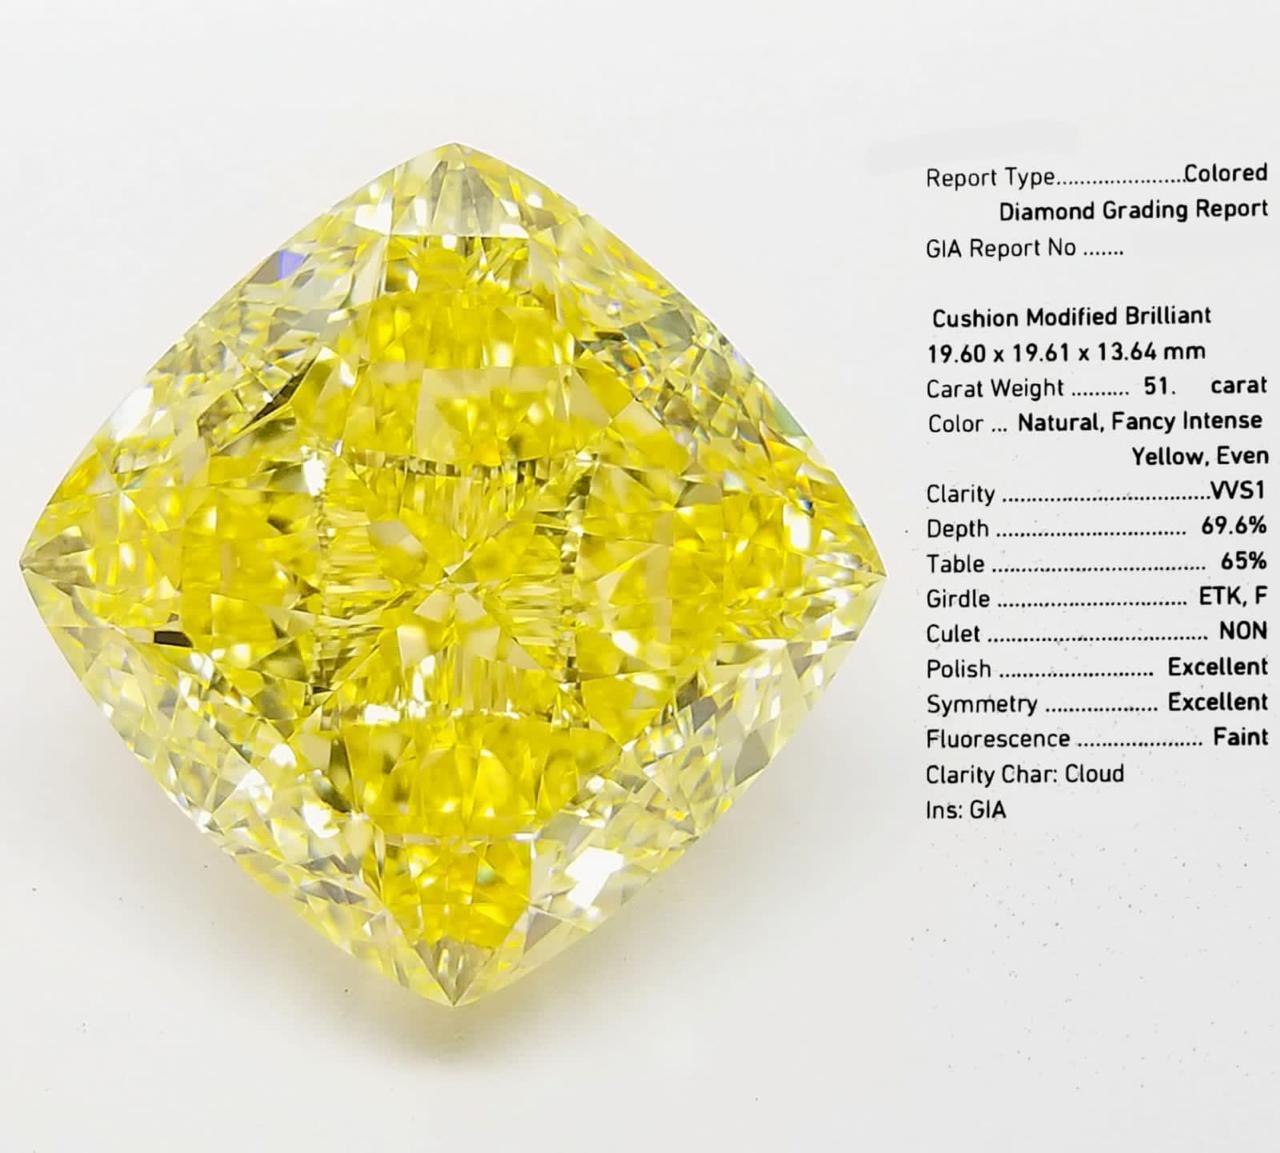 GIA-zertifizierter 51,00 Karat natürlicher intensiv gelber Fancy-Diamant  (Kissenschliff) im Angebot